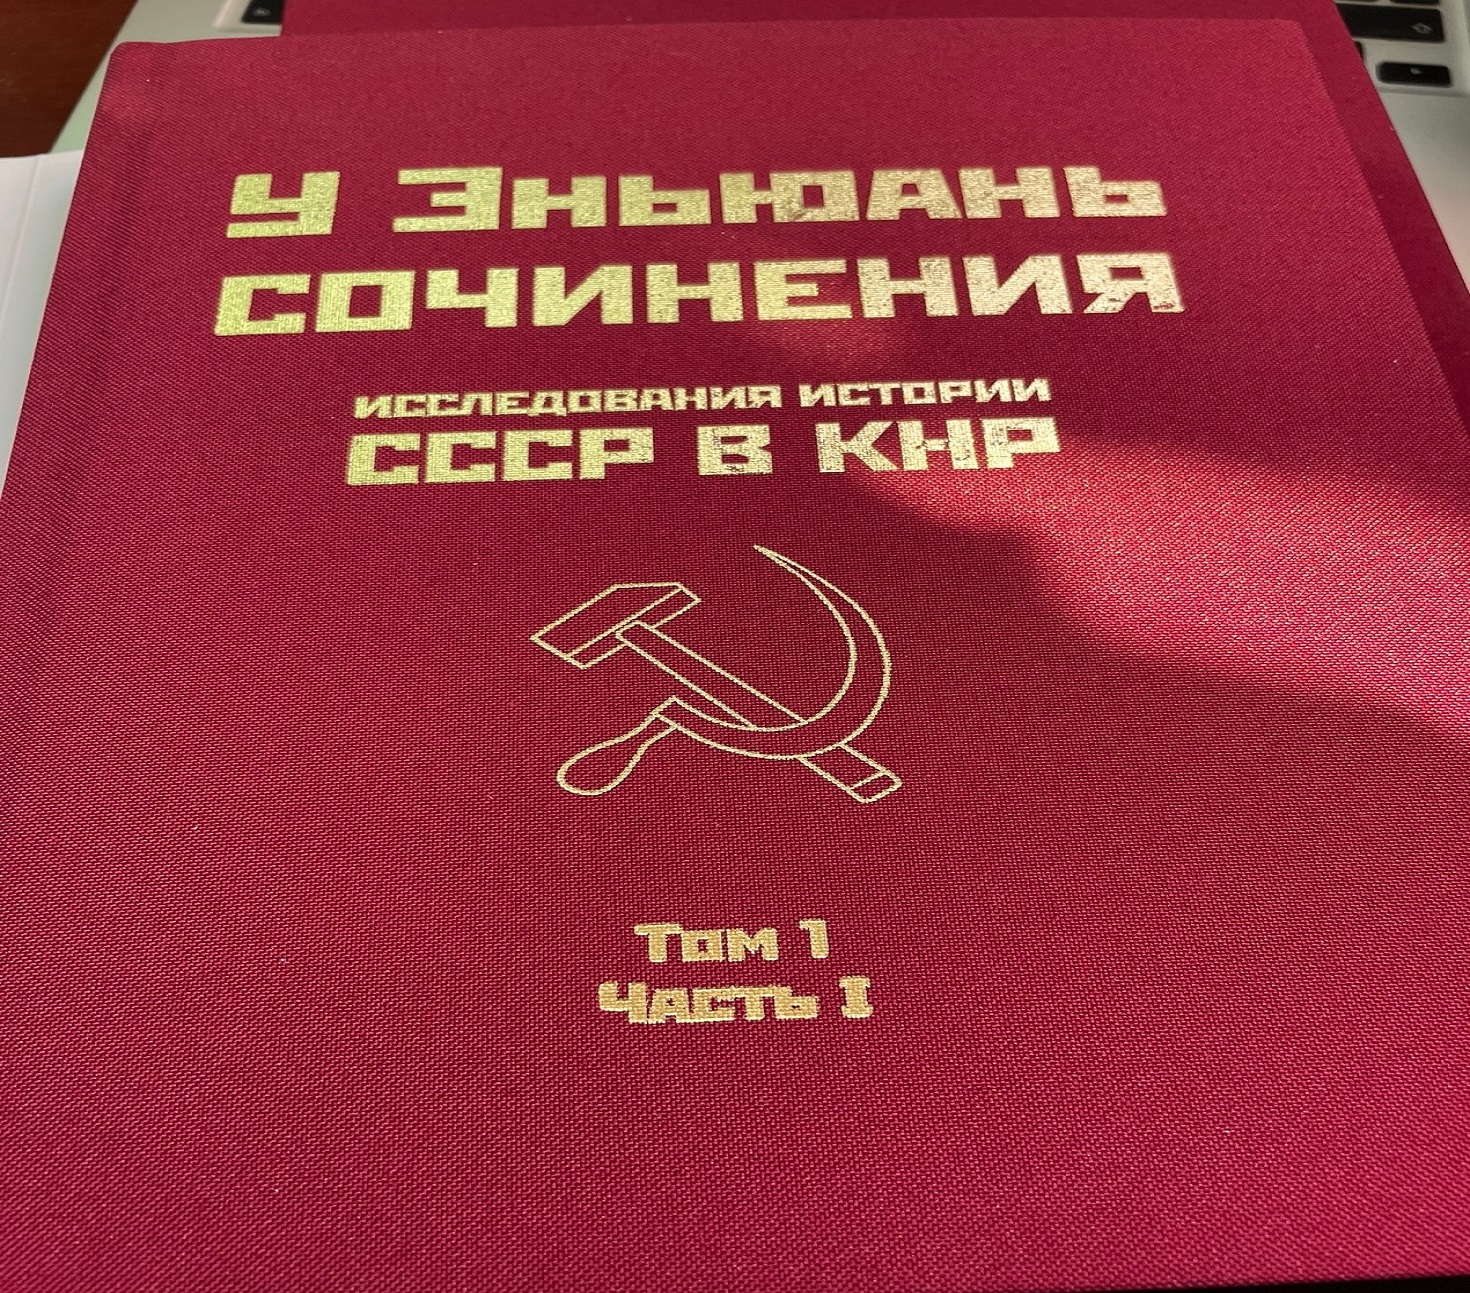 Последняя книга китайского историка-марксиста товарища У Энюань издана в Москве